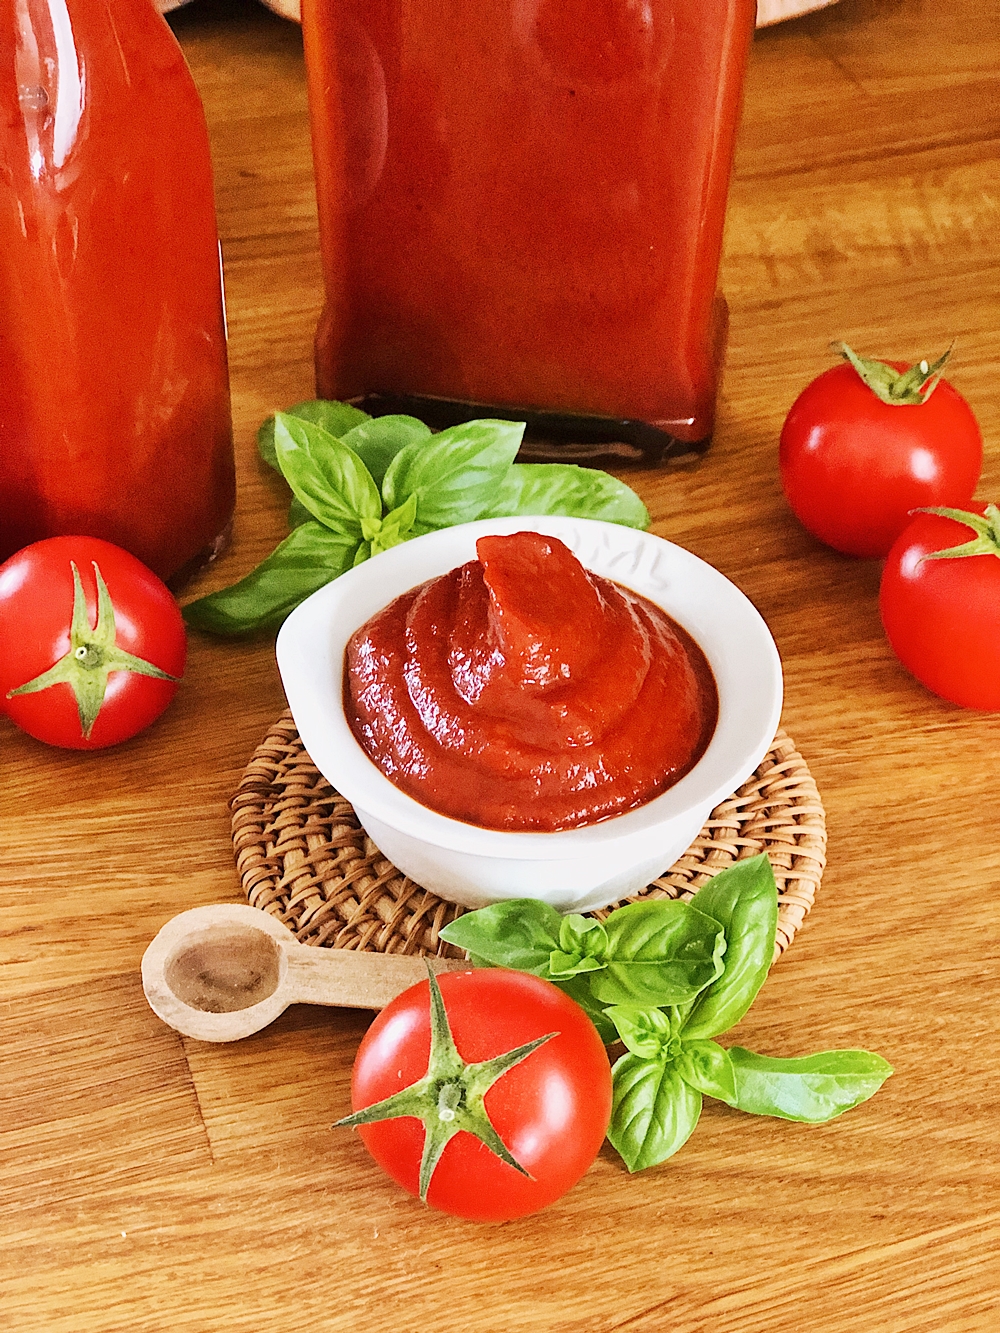 Tomaten Ketchup selber machen-einkochen-tomatos-ketchup-fashionkitchenkocht-selbstgemacht-grundrezept-ketchup wenig zucker_